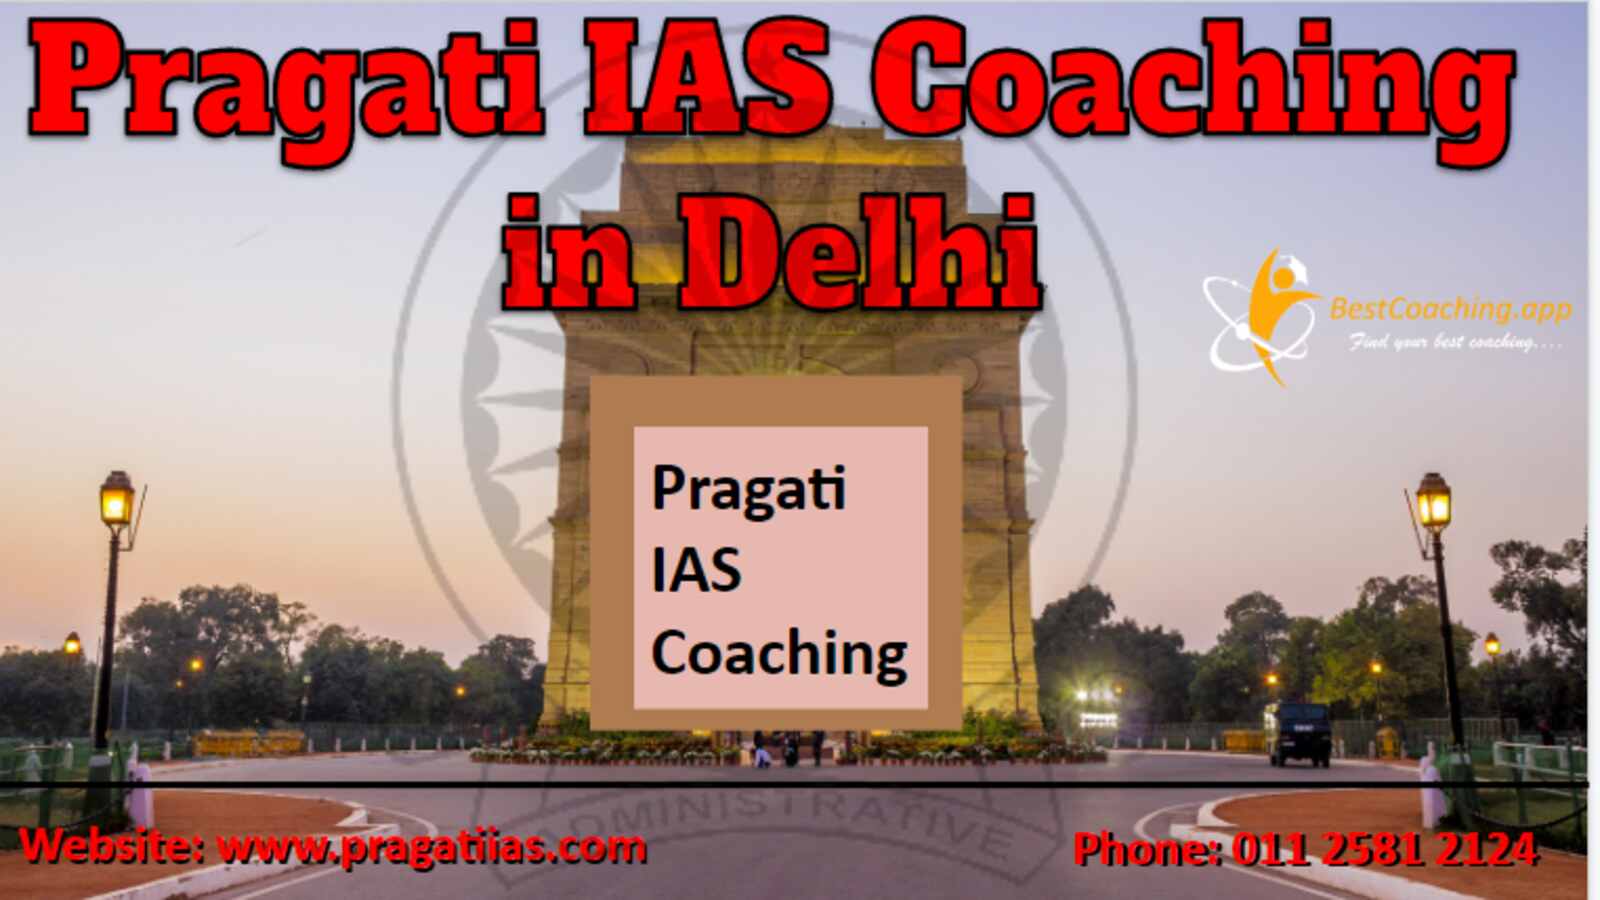 Pragati IAS Coaching in Delhi 